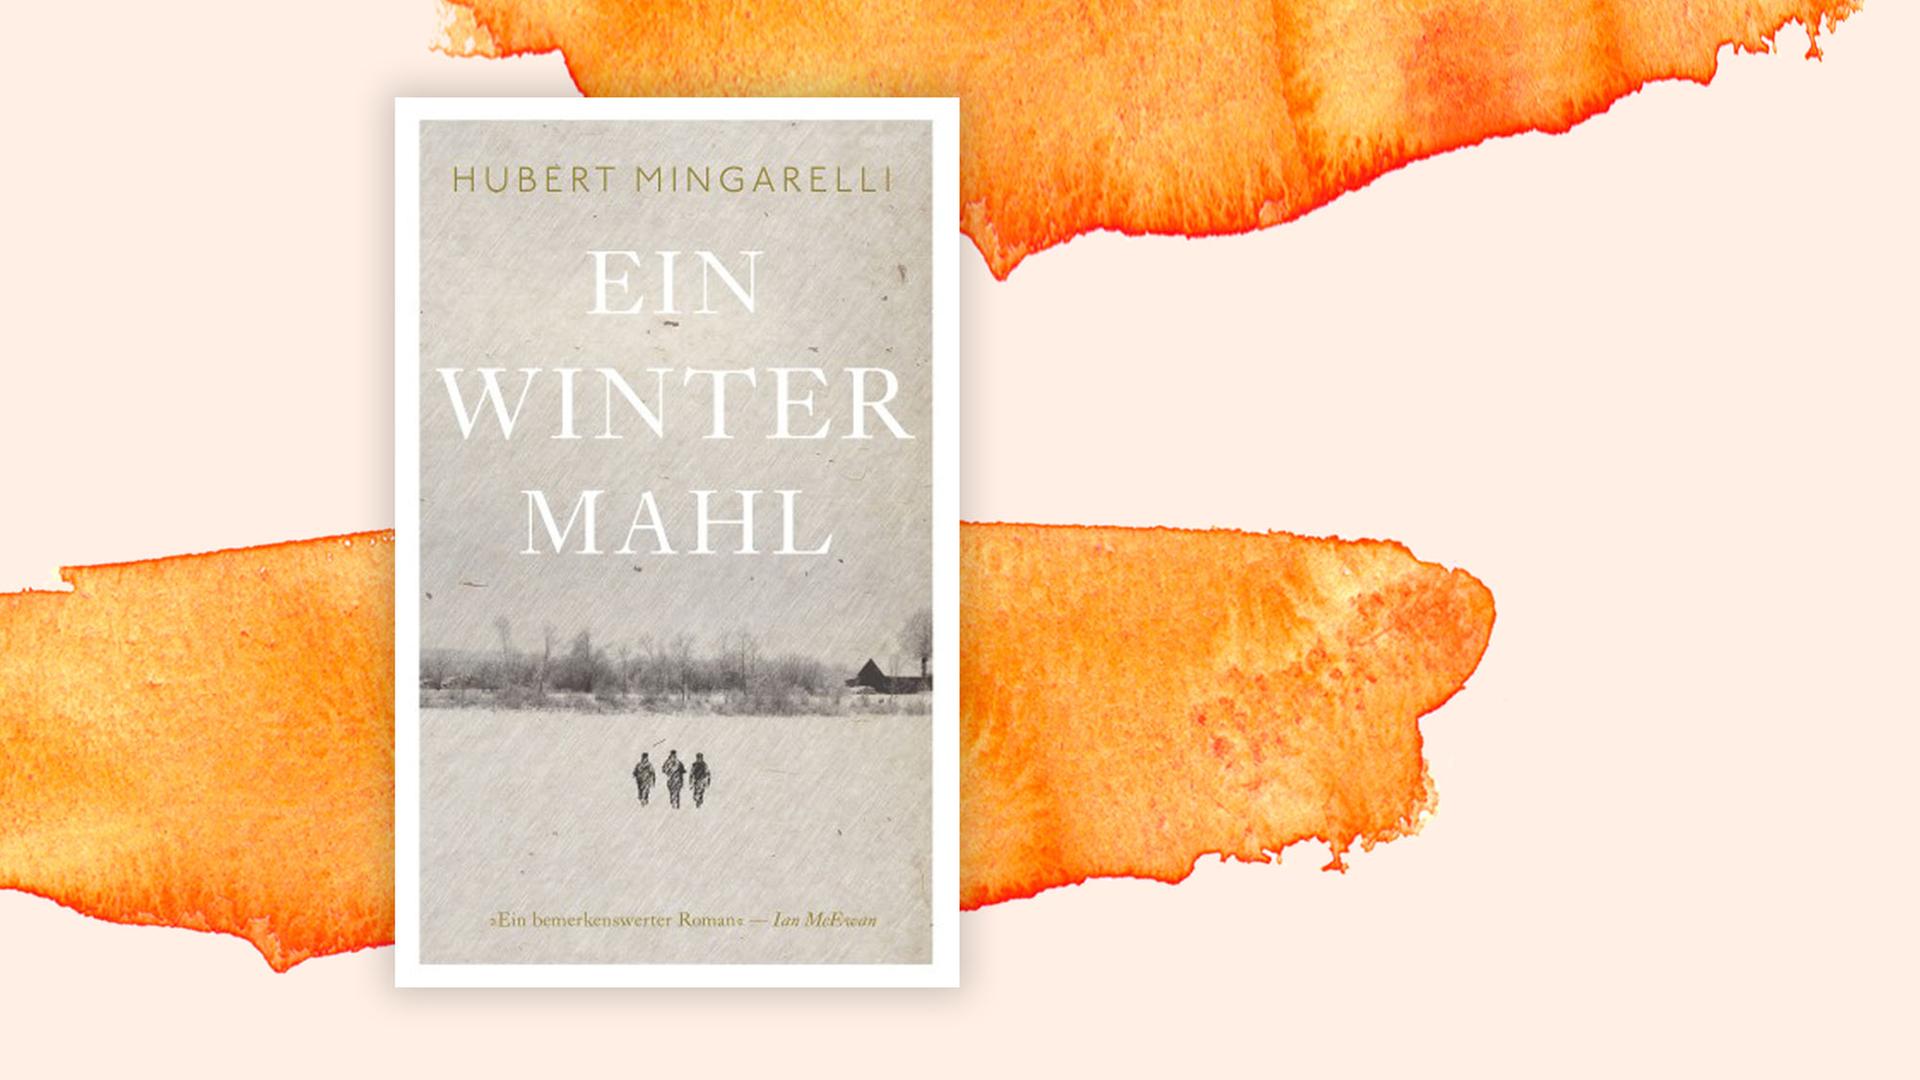 Covoer: Hubert Mingarelli "Ein Wintermahl" vor Hintergrund